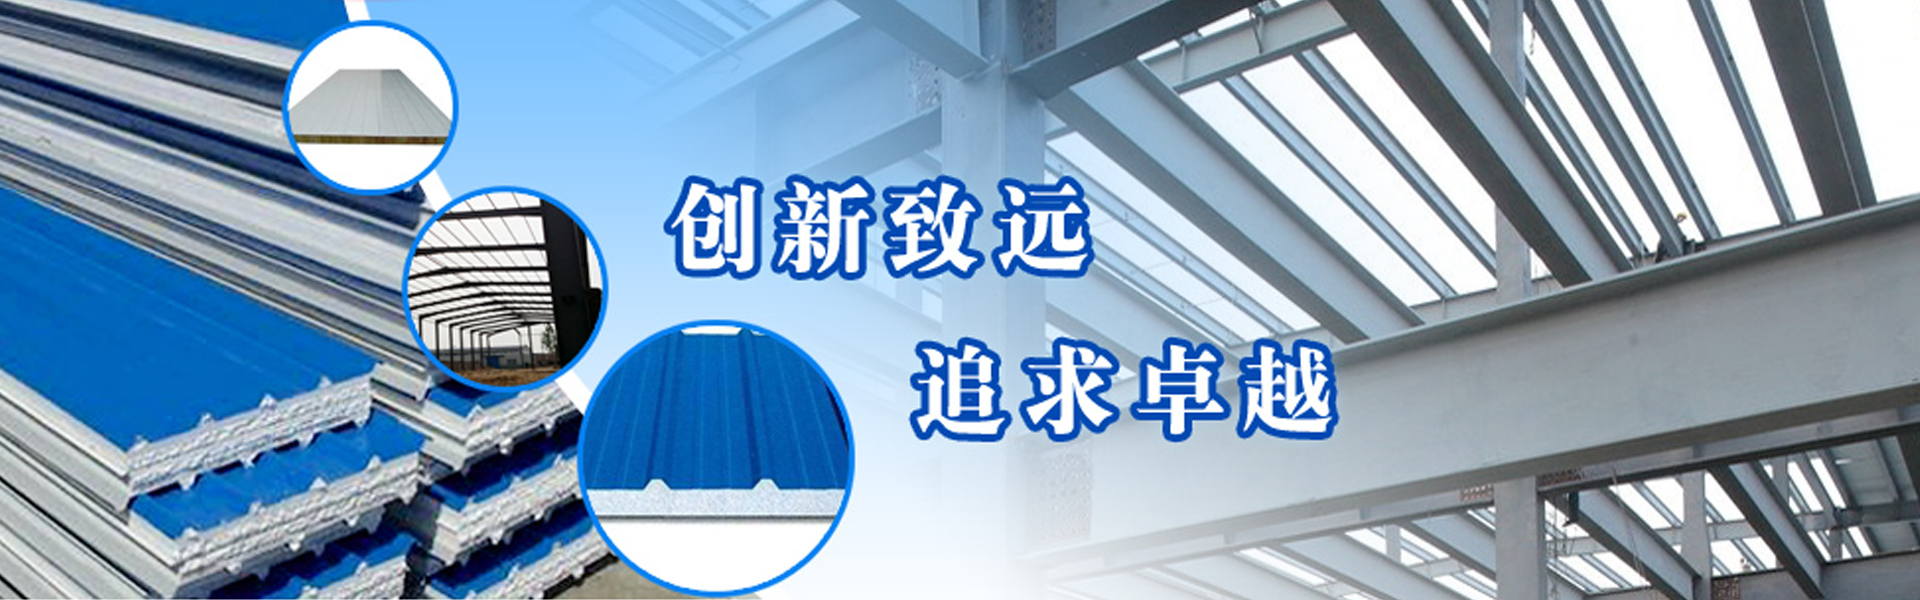 济南彩钢仿古瓦安装厂家由富海360提供百度推广方案